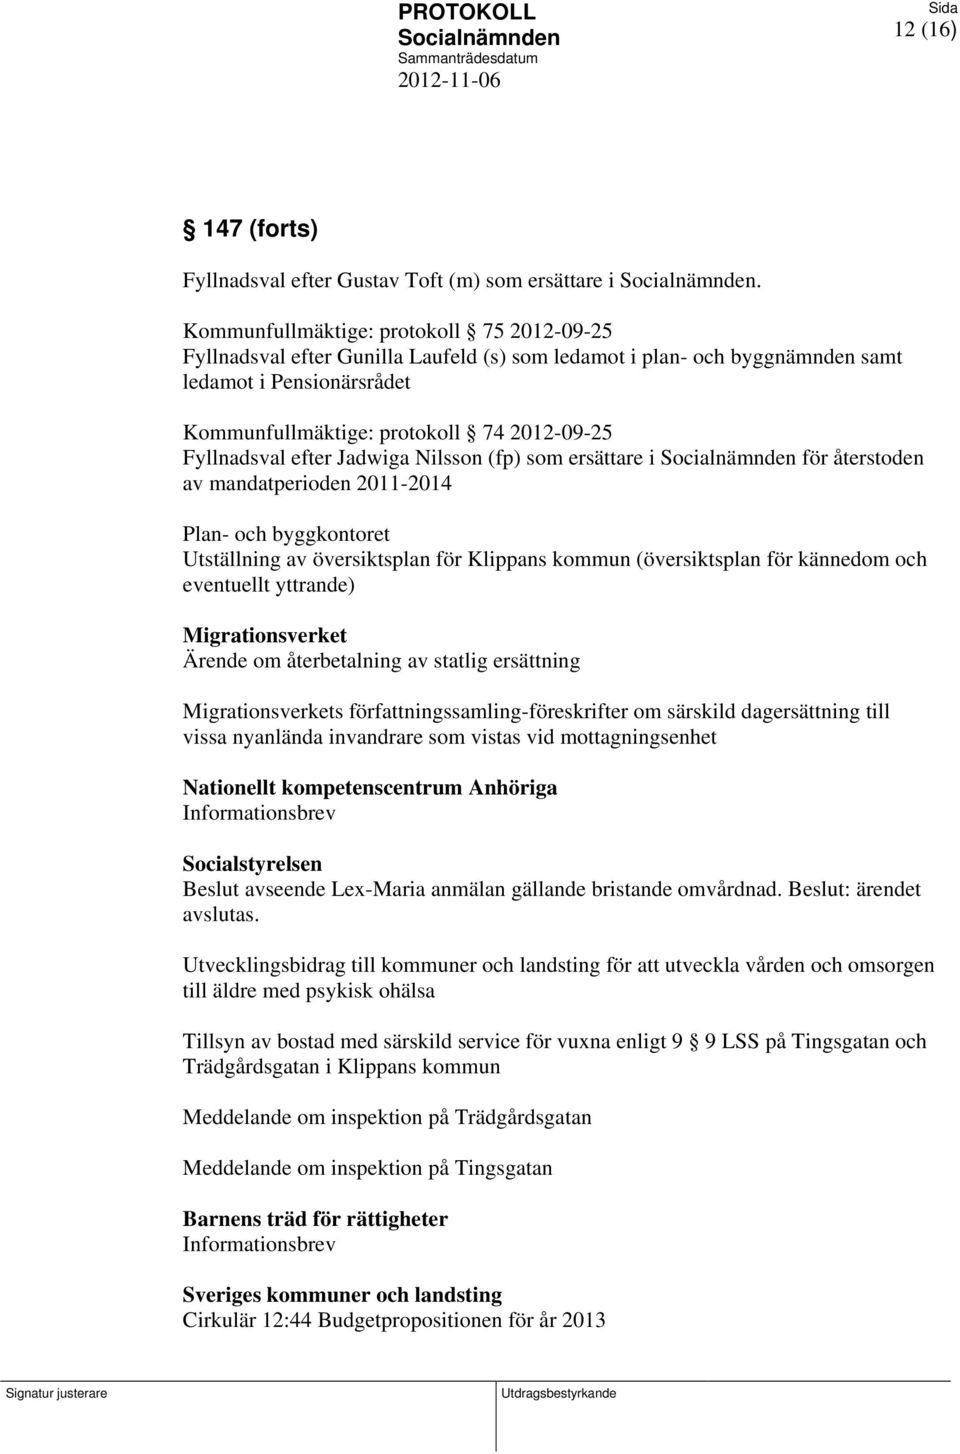 Fyllnadsval efter Jadwiga Nilsson (fp) som ersättare i för återstoden av mandatperioden 2011-2014 Plan- och byggkontoret Utställning av översiktsplan för Klippans kommun (översiktsplan för kännedom